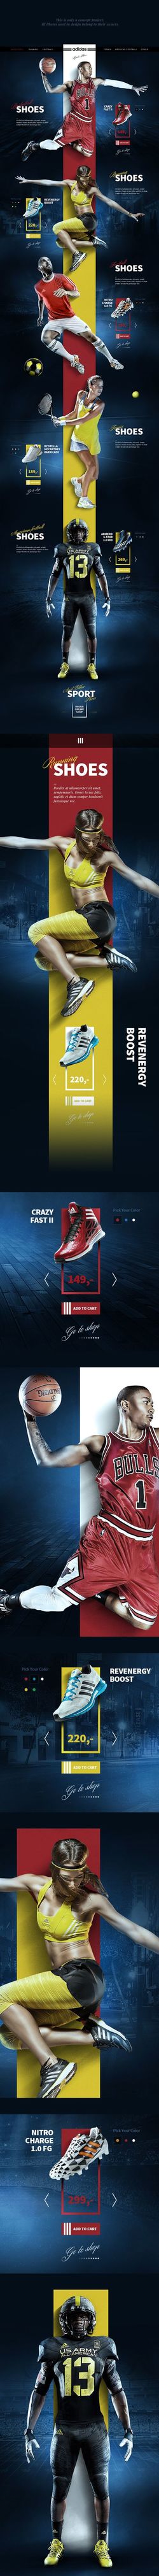 运动鞋网页设计